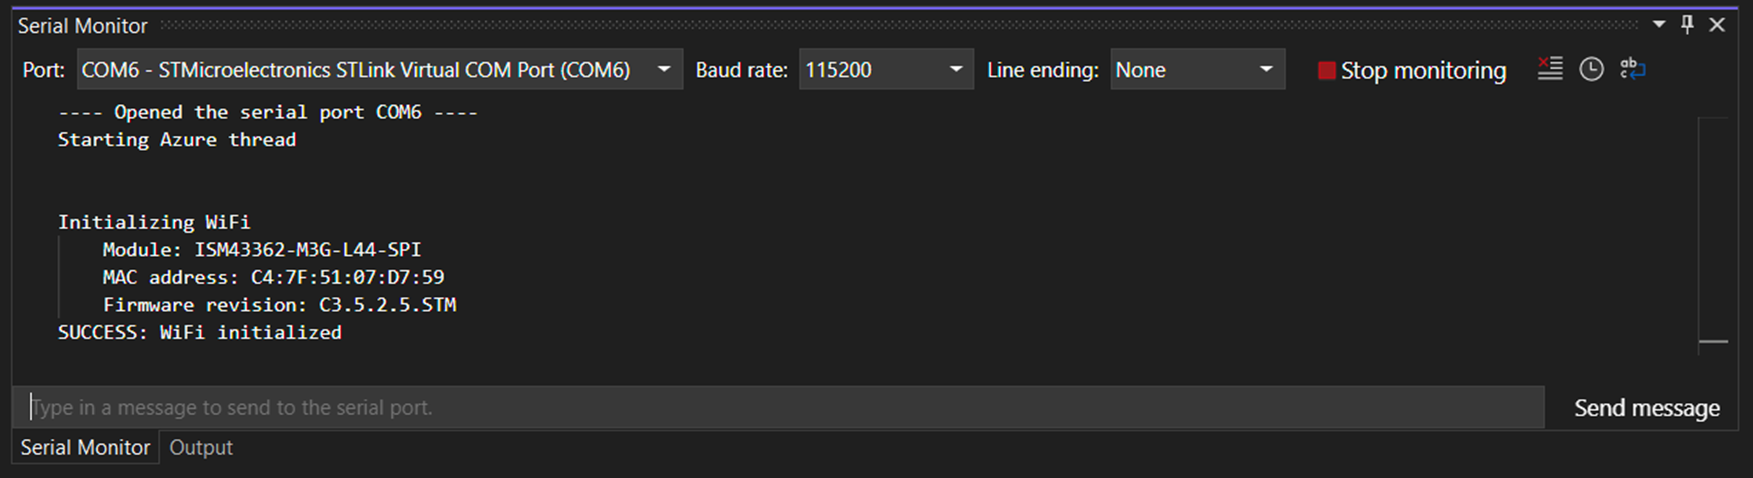 Visual Studio serial monitor screenshot